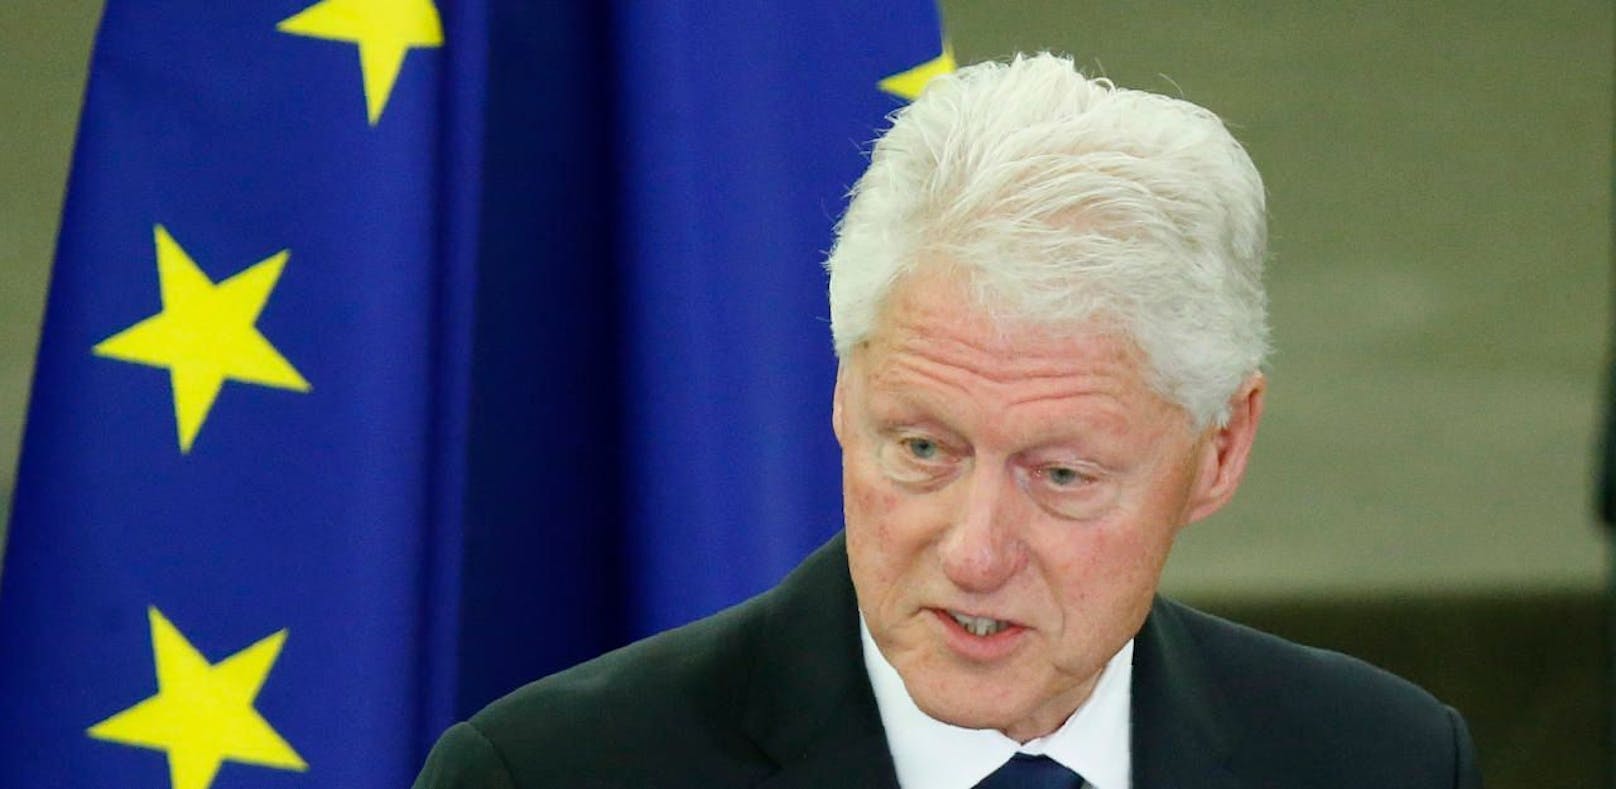 Bill Clinton über Helmut Kohl: "Ich habe ihn geliebt"